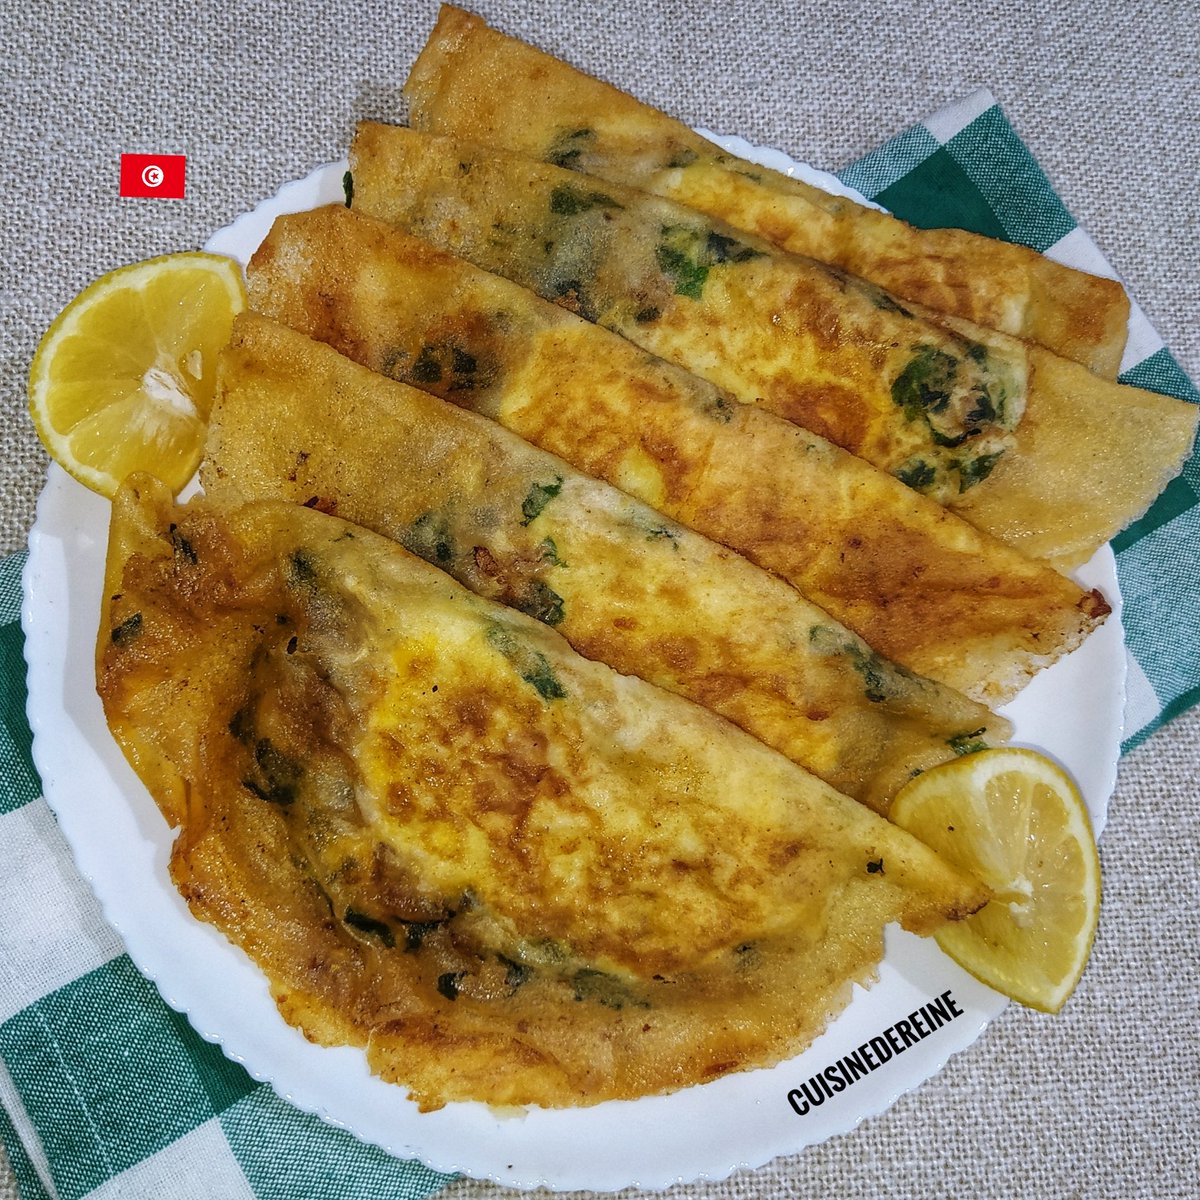 بريك 🇹🇳 طريقة التحضير بالفيديو: youtu.be/8dvGAgbOqtA?si… #Food #Tunisia #yummy